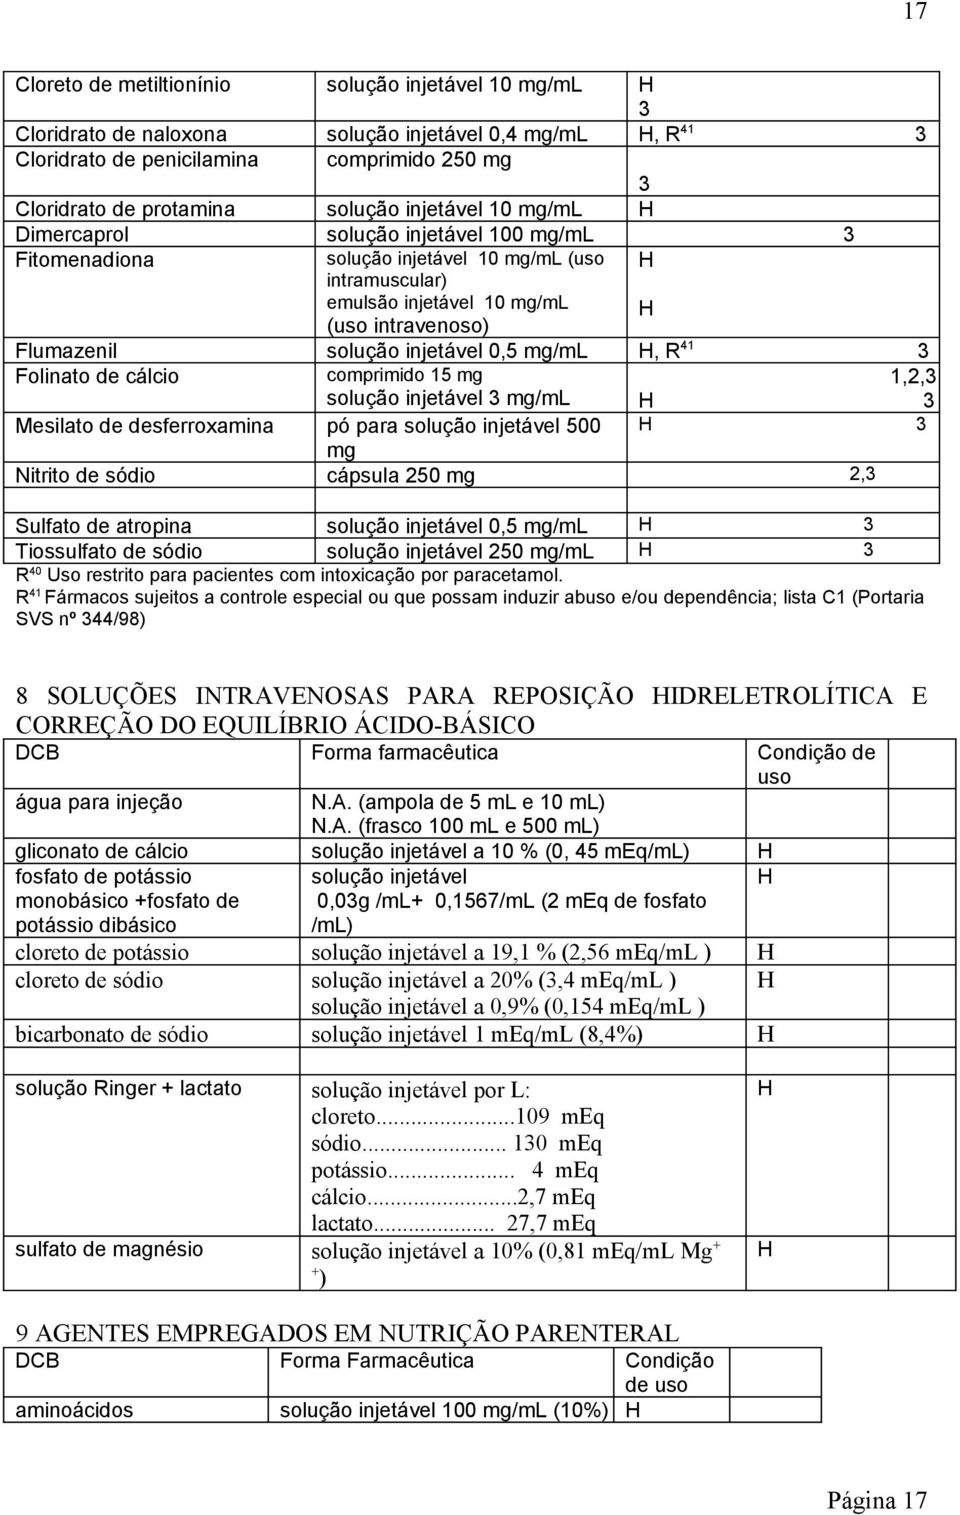 Folinato de cálcio comprimido 15 mg solução injetável mg/ml Mesilato de desferroxamina pó para solução injetável 500 mg Nitrito de sódio cápsula 250 mg 2, Sulfato de atropina solução injetável 0,5